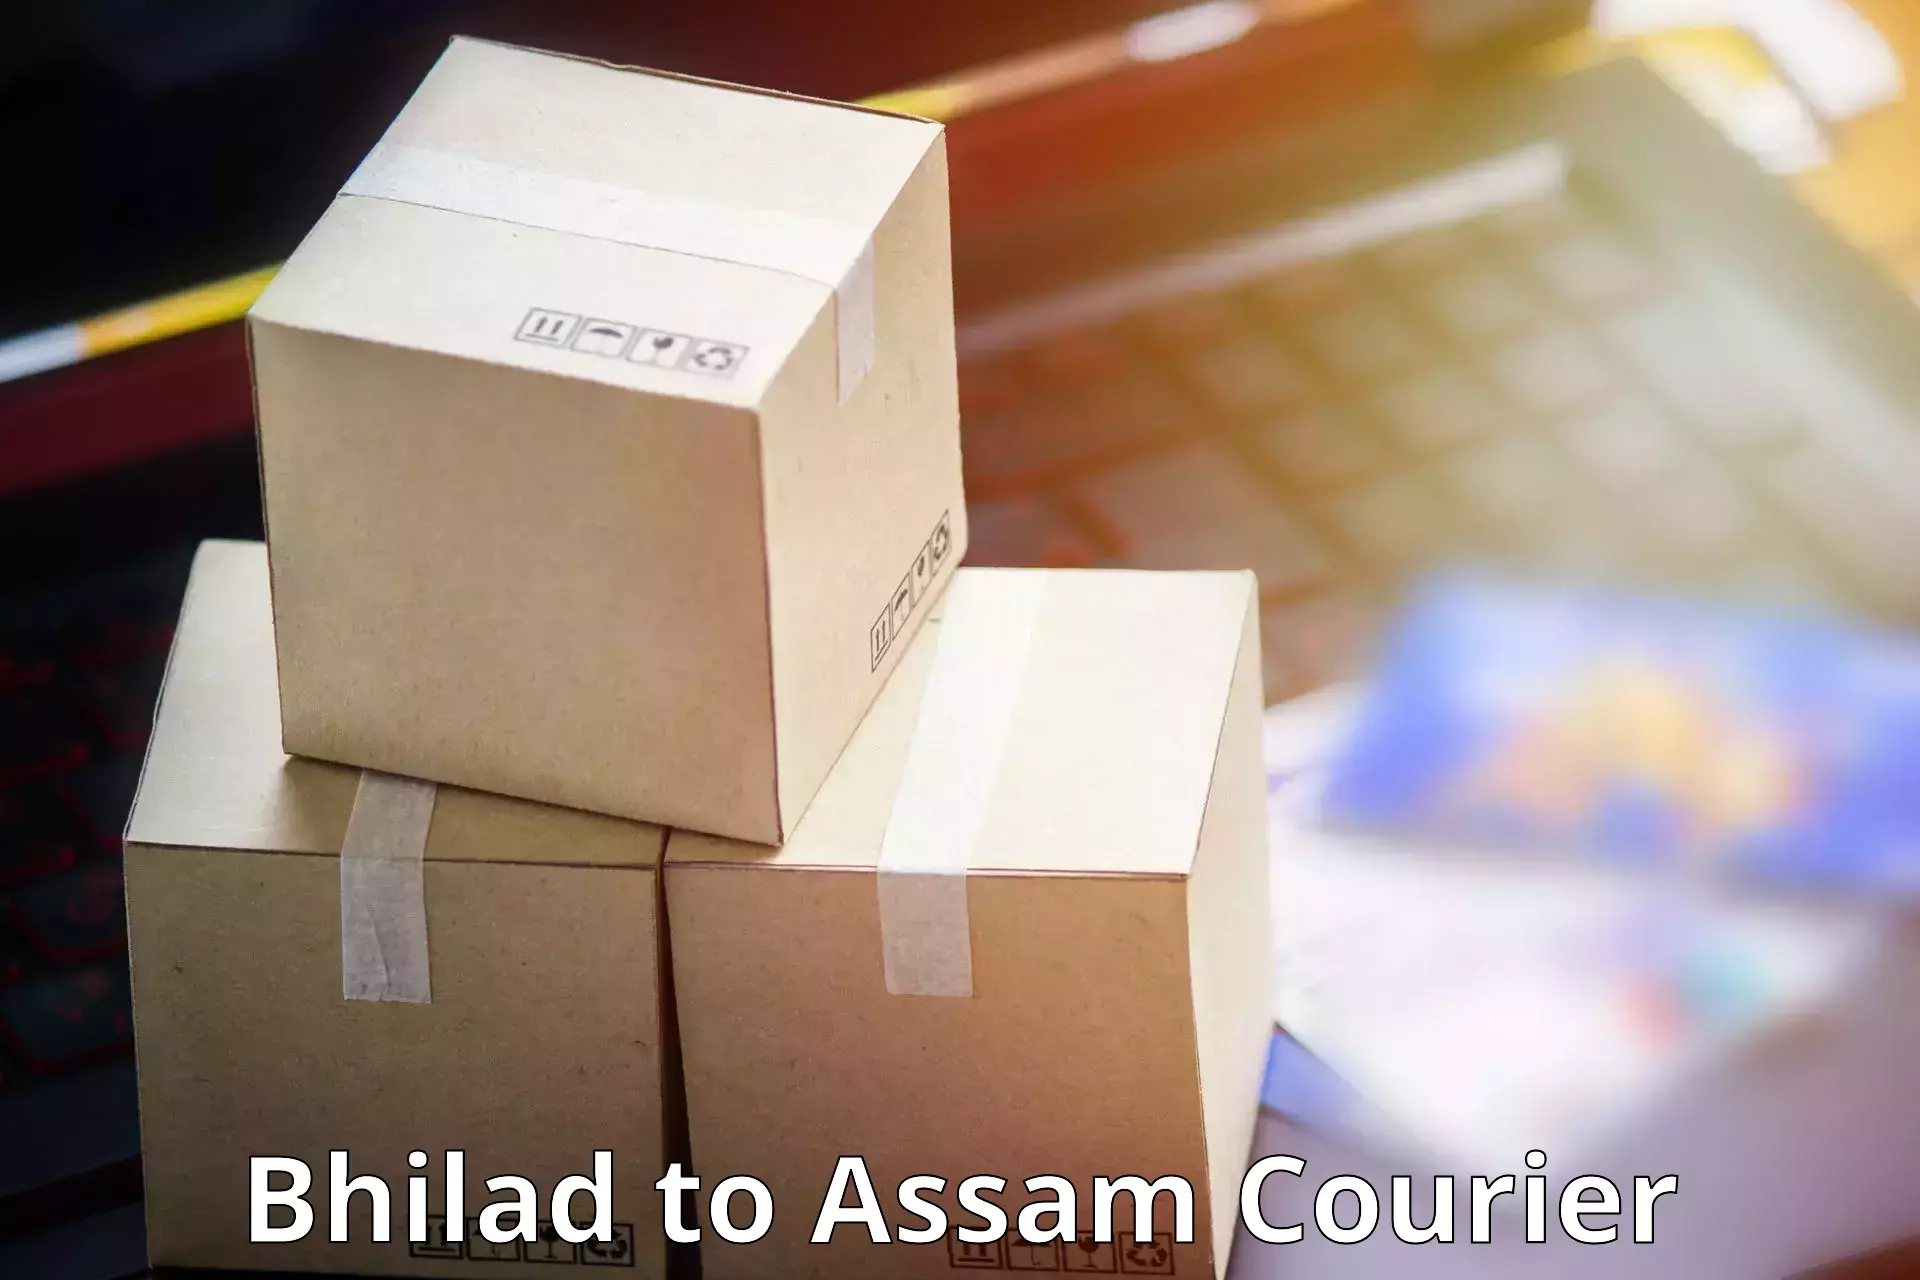 Professional courier services Bhilad to Chapar